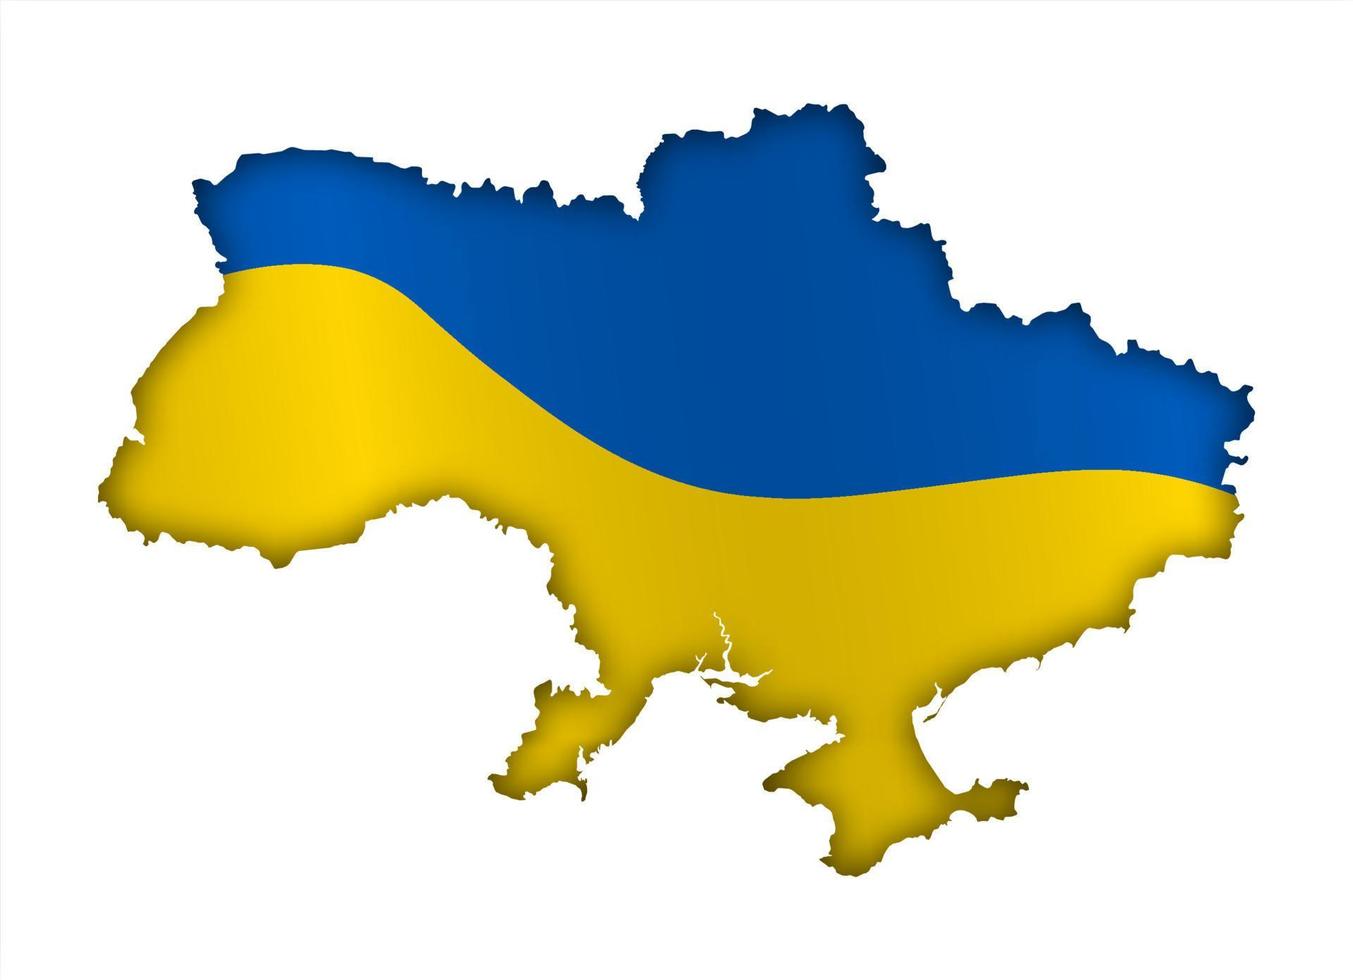 Grenzen der Ukraine in den Farben der ukrainischen Nationalflagge. Tag der Unabhängigkeit. Grundlage des festlichen Banners, Layout. Vektor auf weißem Hintergrund